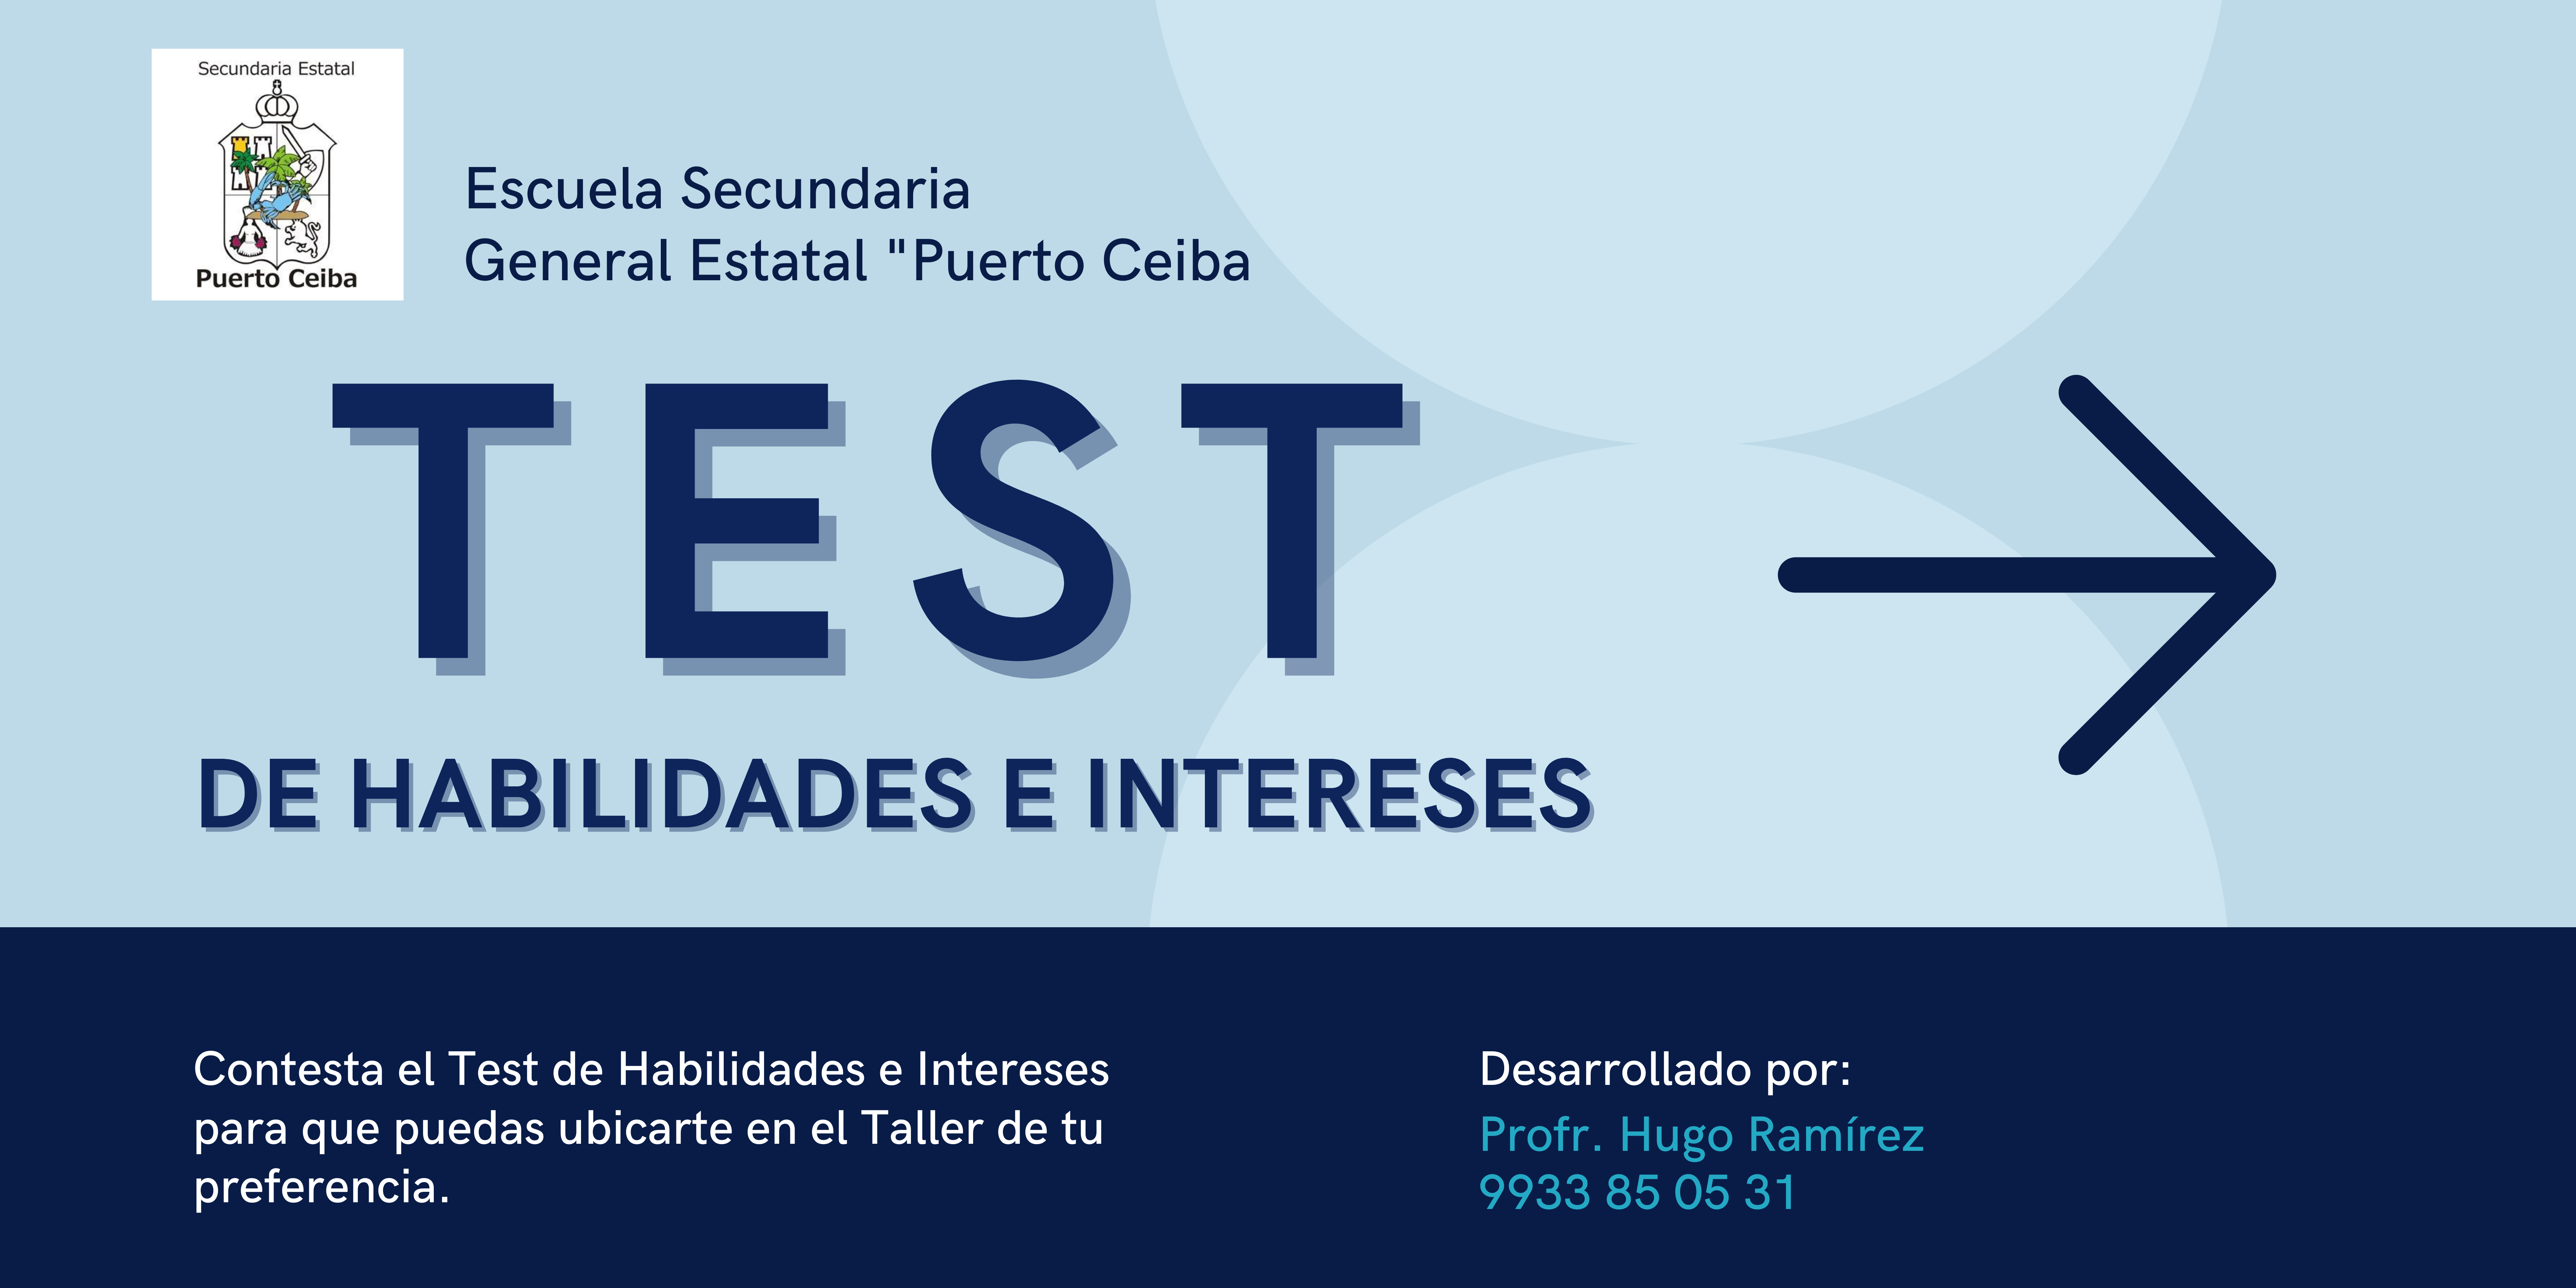 Botón para acceder al TEST de Habilidades e Intereses de Tecnologías, en la Escuela Secundaria General Estatal "Puerto Ceiba"